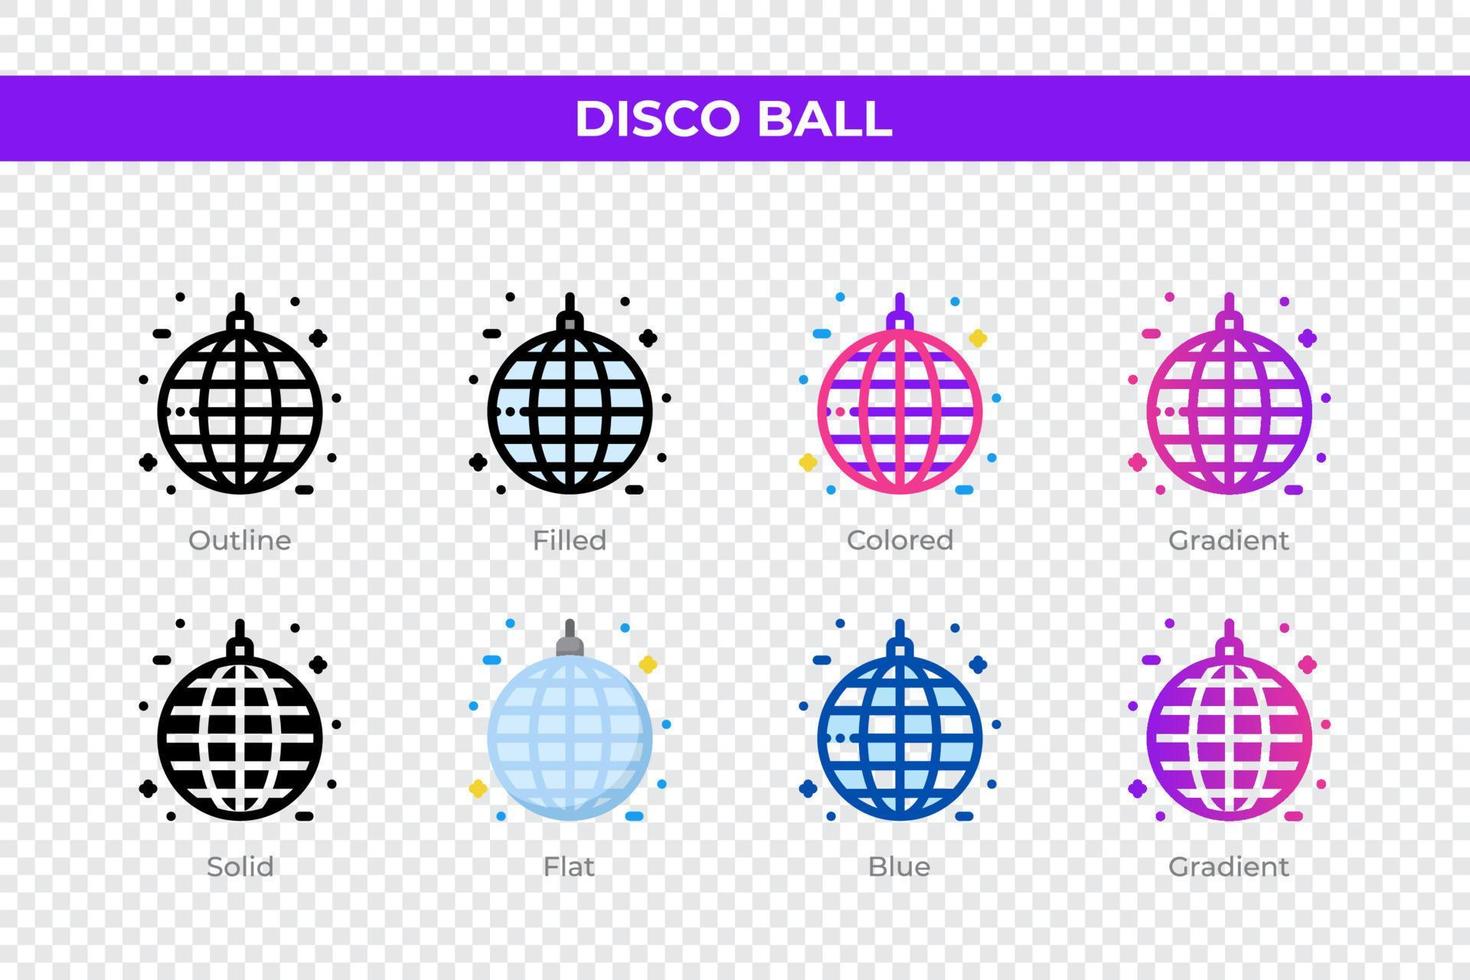 iconos de bolas de discoteca en diferentes estilos. conjunto de iconos de bola de discoteca. símbolo de vacaciones. conjunto de iconos de estilo diferente. ilustración vectorial vector